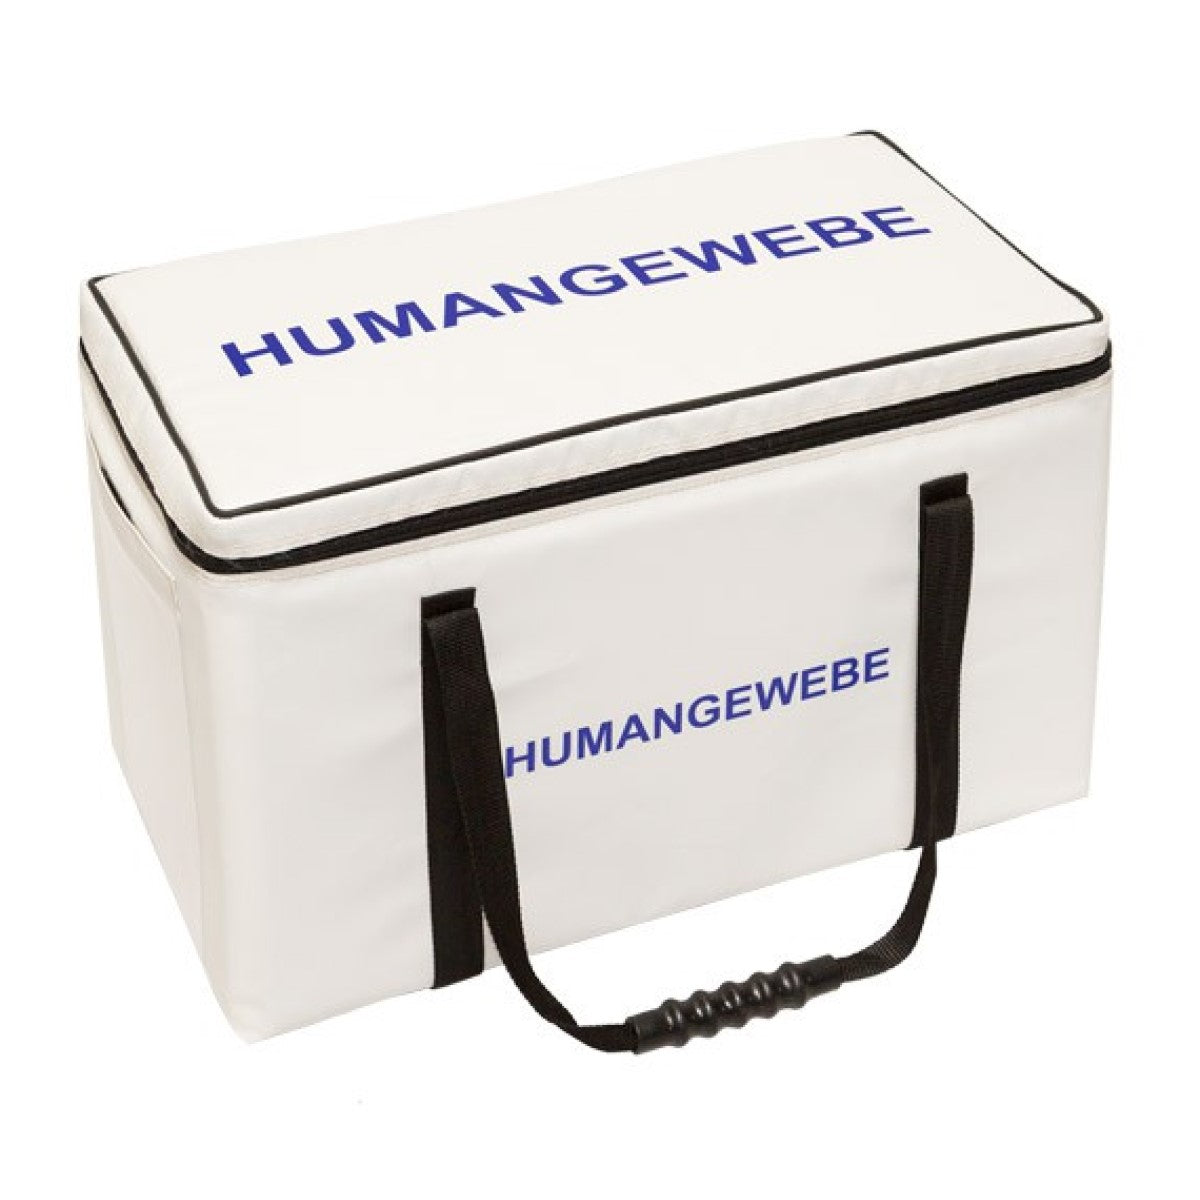 Labortasche für den Transport von Humangewebe, Amputate oder Organe